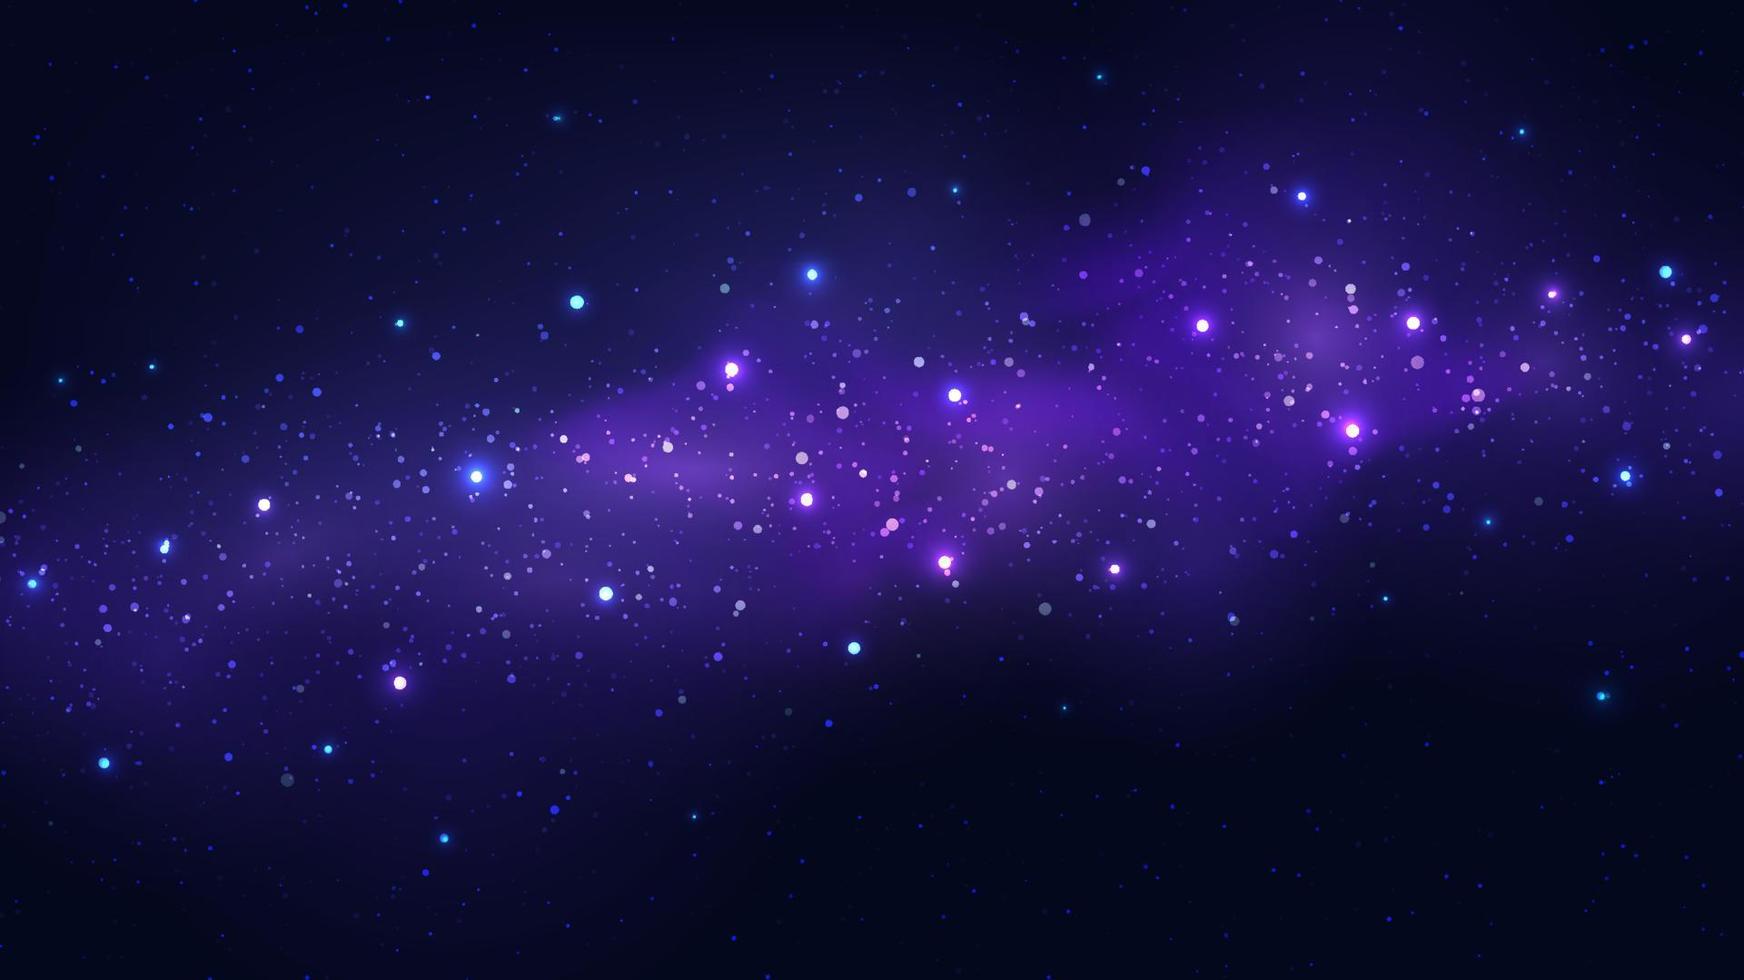 abstract blauw nacht ruimte kosmos achtergrond met nevel en schijnend ster vector